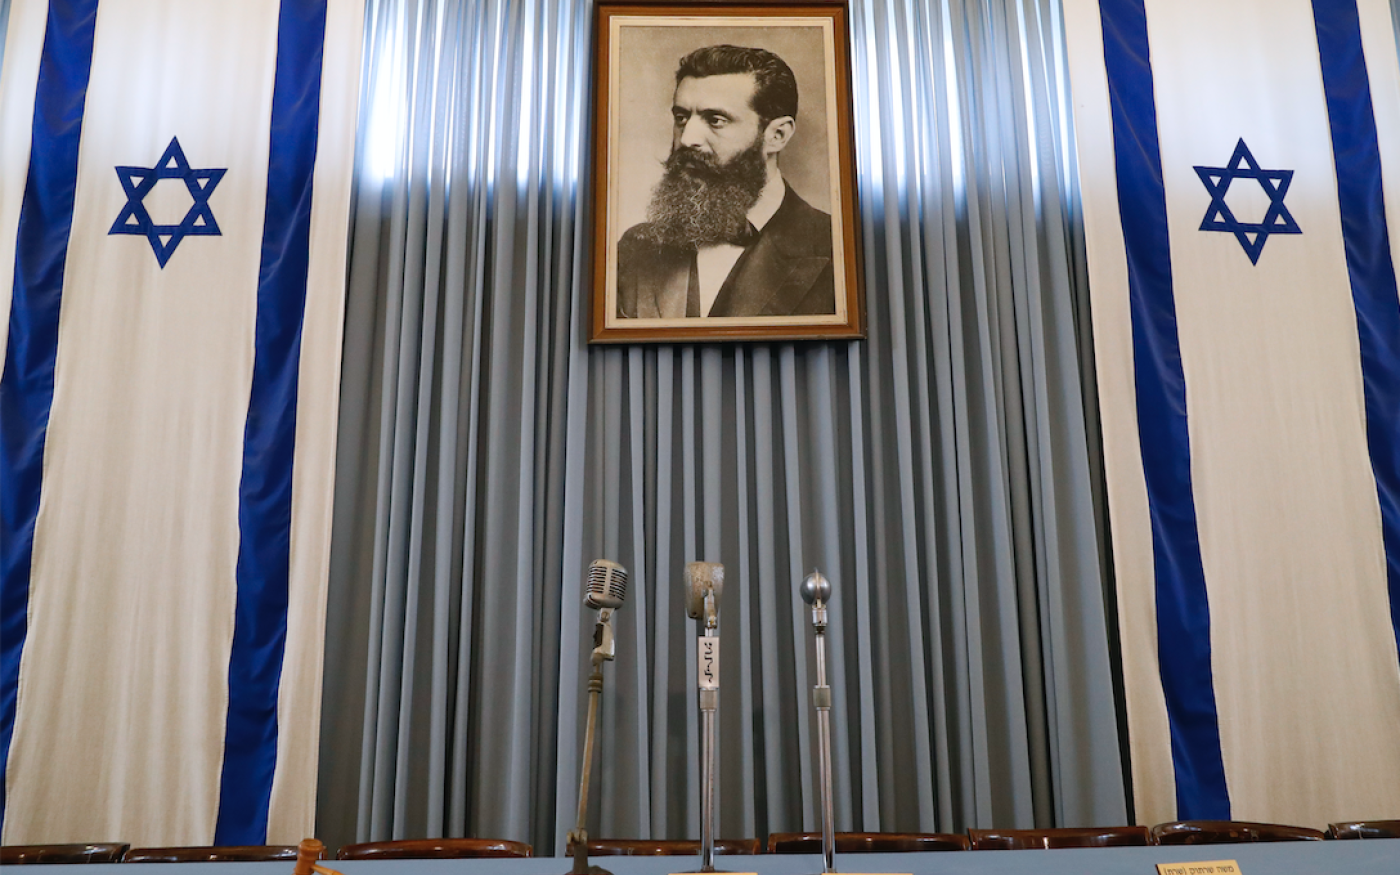 Le portrait de Théodore Herzl, le défunt fondateur du sionisme politique, ornant le bâtiment du « Musée de l’Independence Hall », à Tel-Aviv, le 3 mai 2018 (AFP)